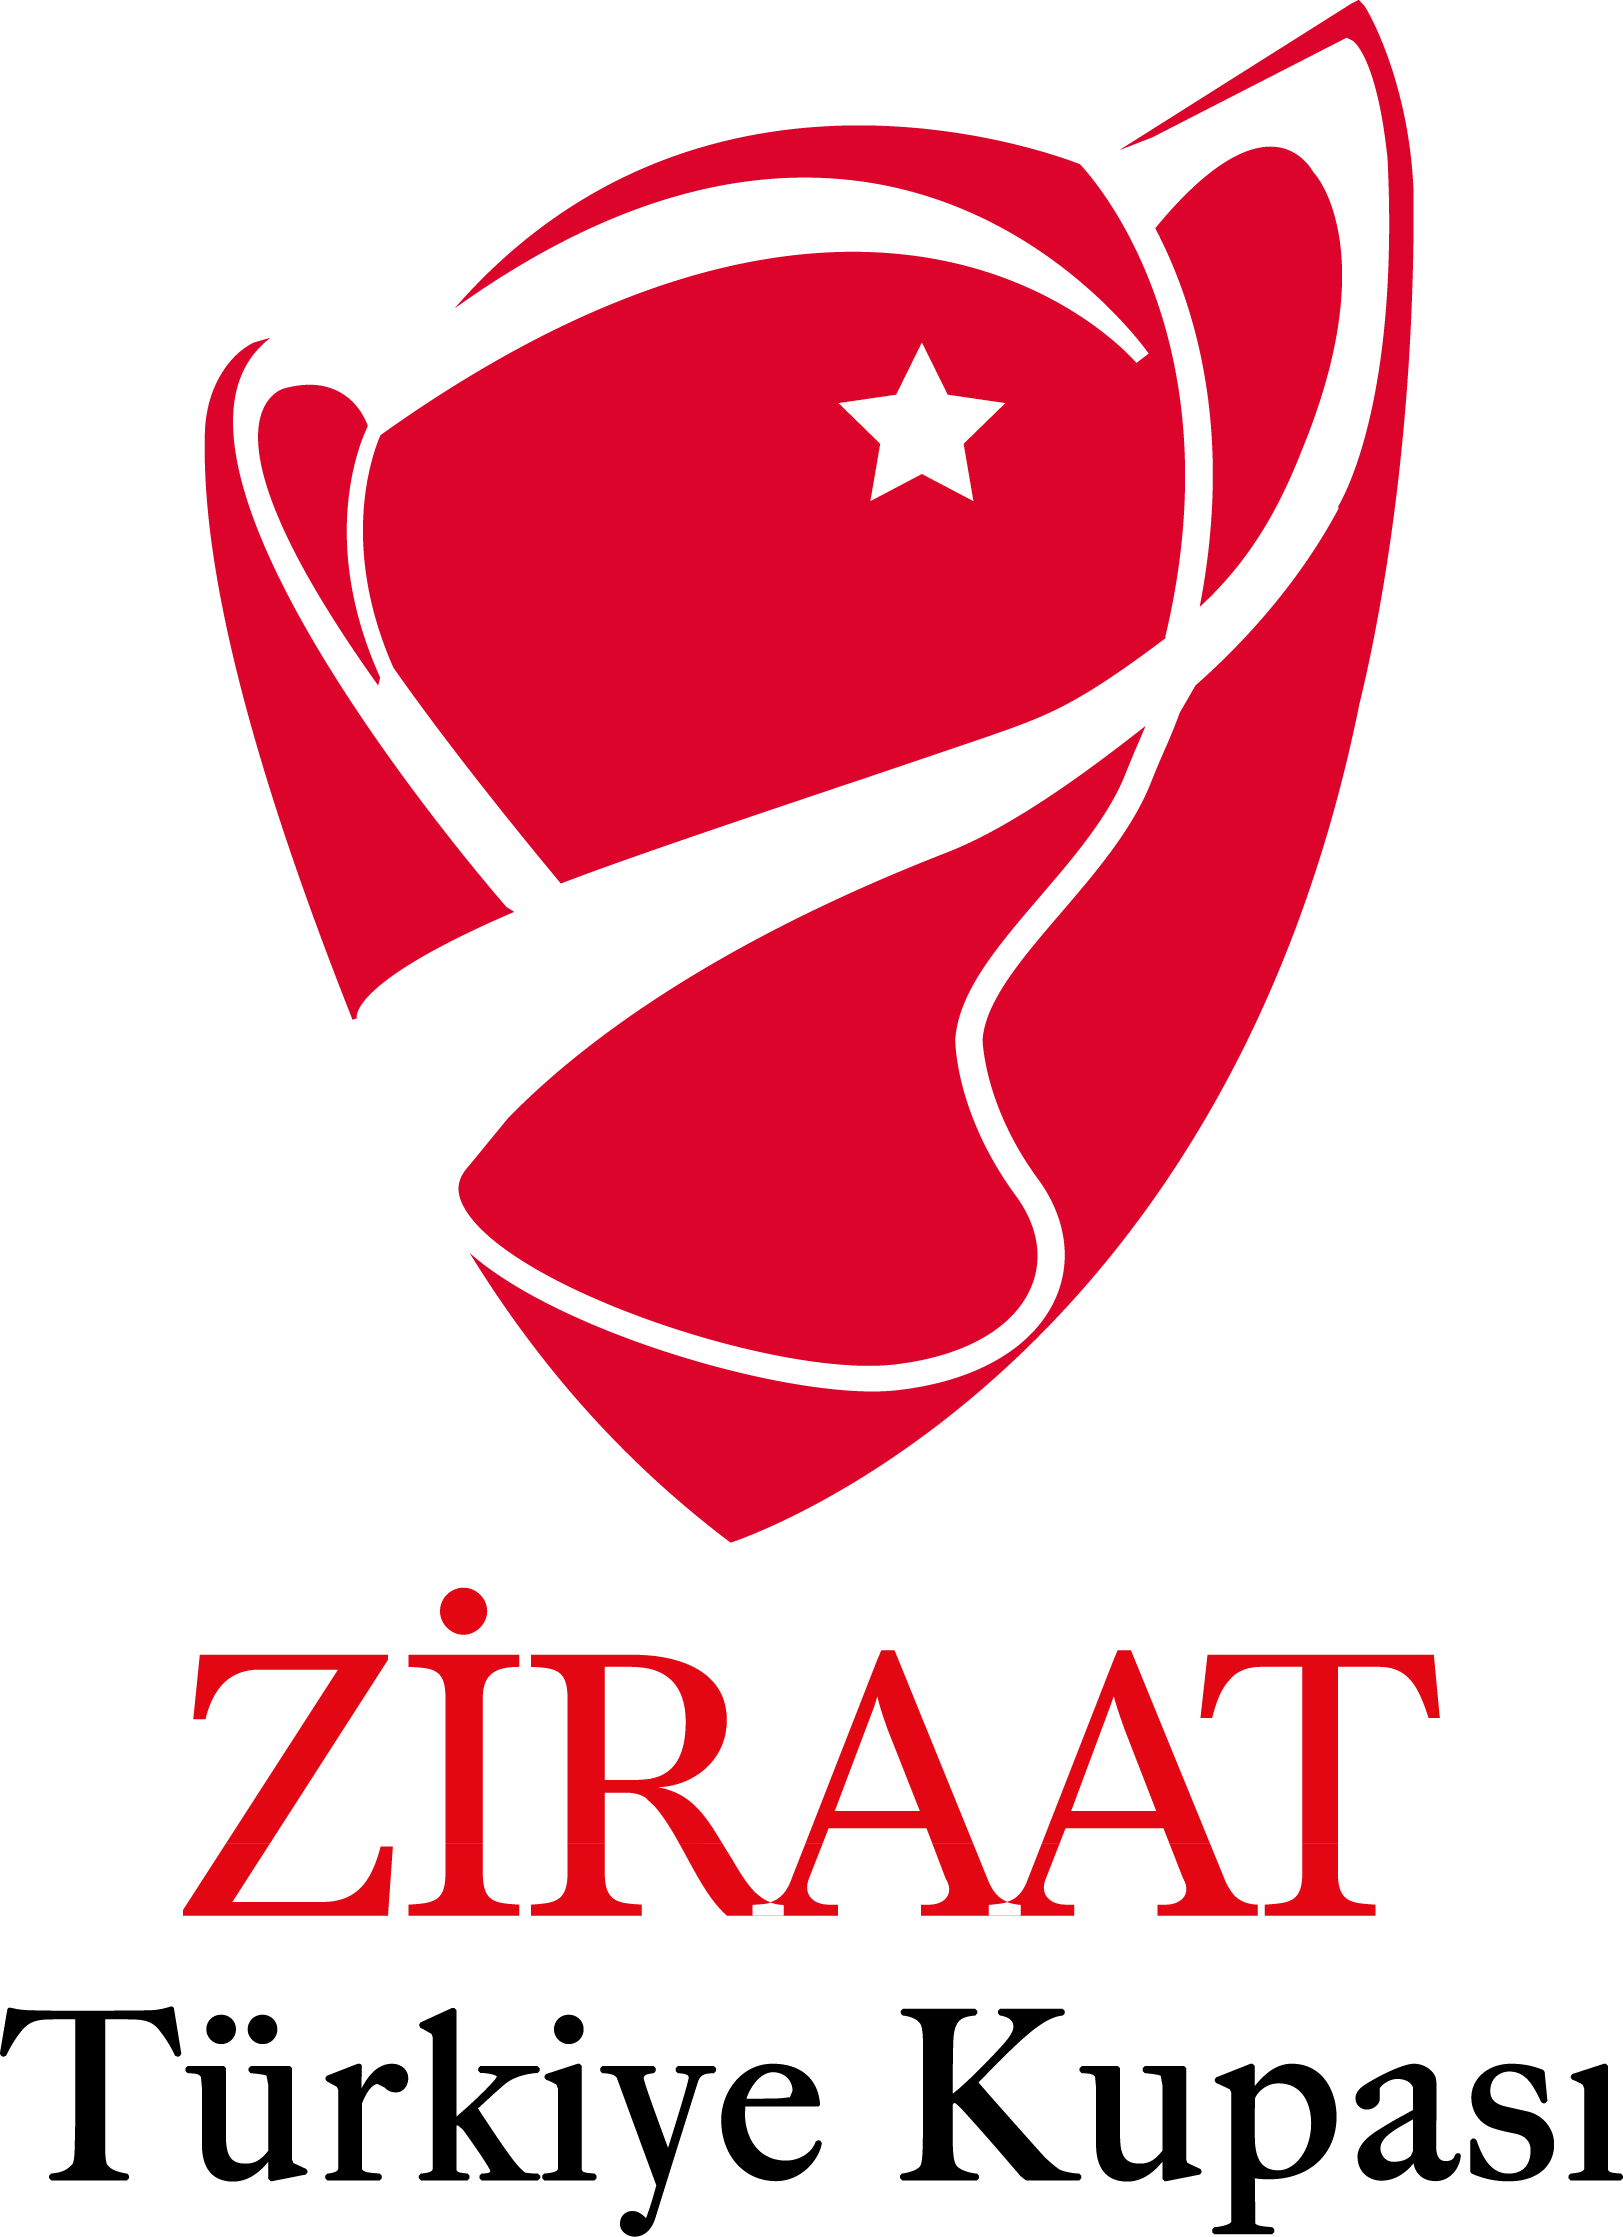 Ziraat Türkiye Kupası Logo png